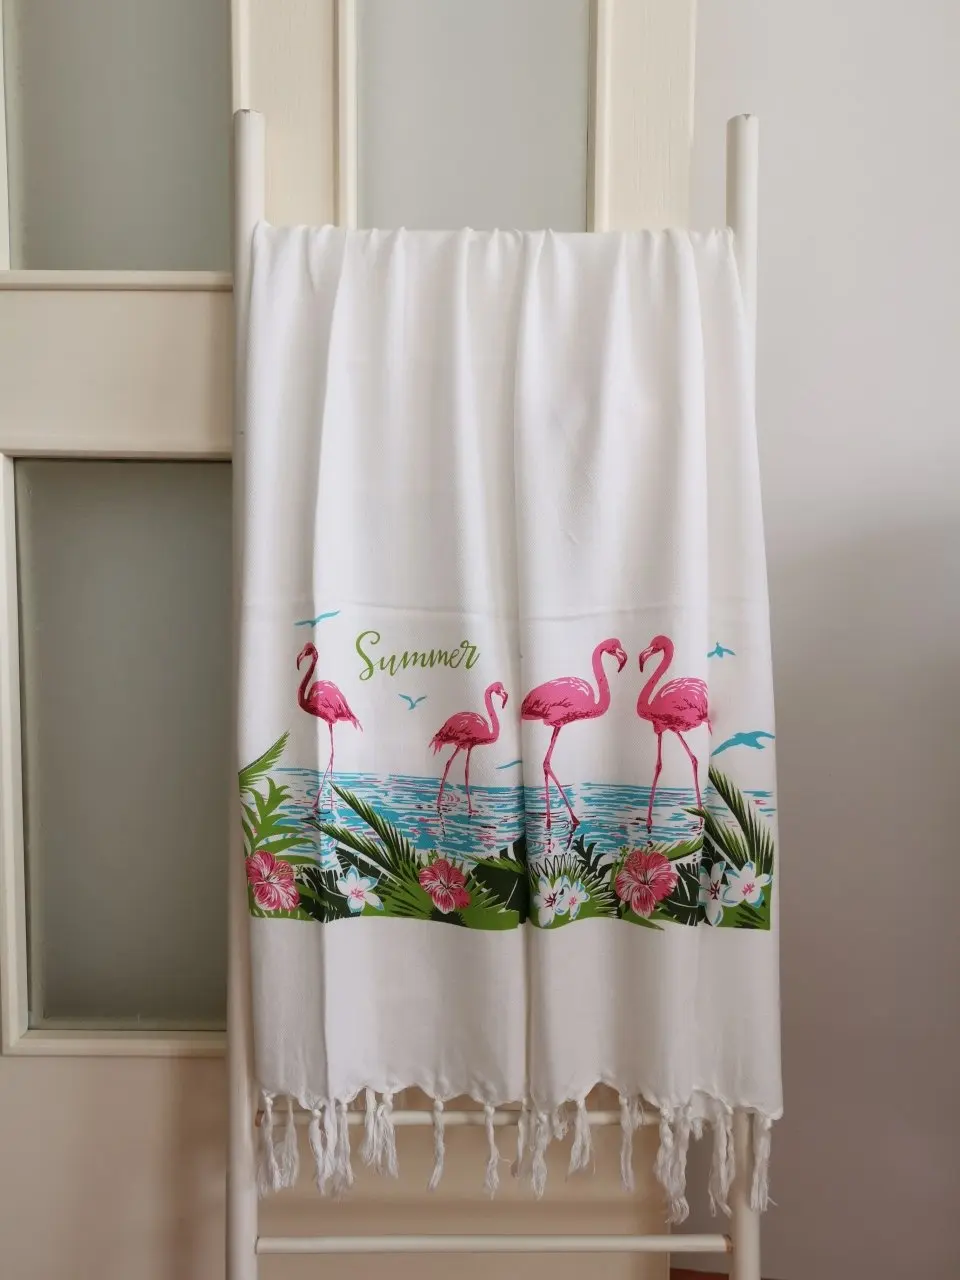 

Банное полотенце с принтом фламинго, пештемали, Пляжная сауна, спа 95x180, пештемальный белый